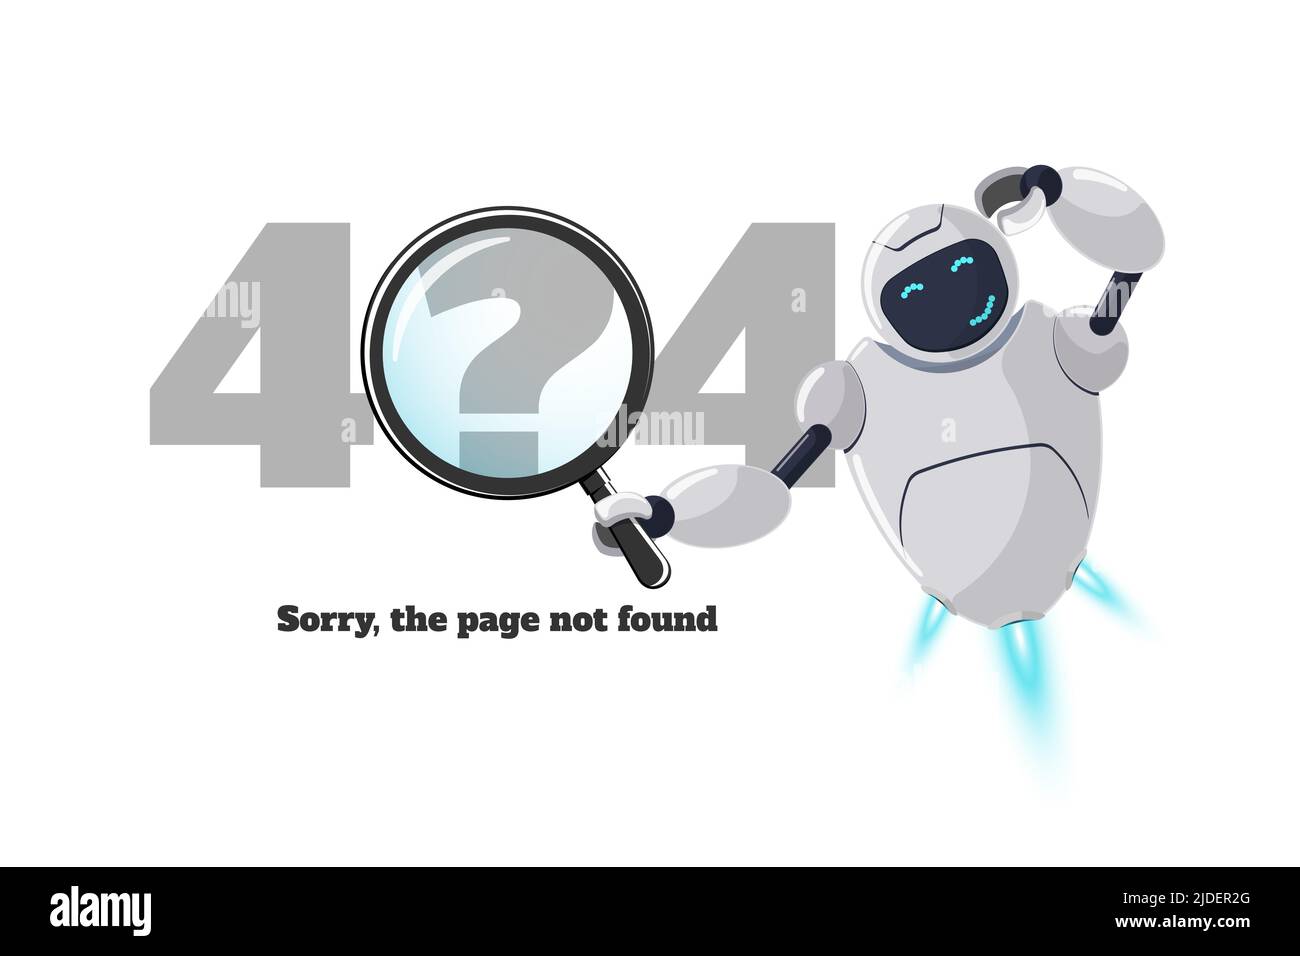 Pagina Web non trovata errore 404. Personaggio robot preoccupato con lente d'ingrandimento in mano. Crash del sito sul lavoro tecnico EPS web design template con chatbot mascot. Errore assistenza bot online Cartoon Illustrazione Vettoriale